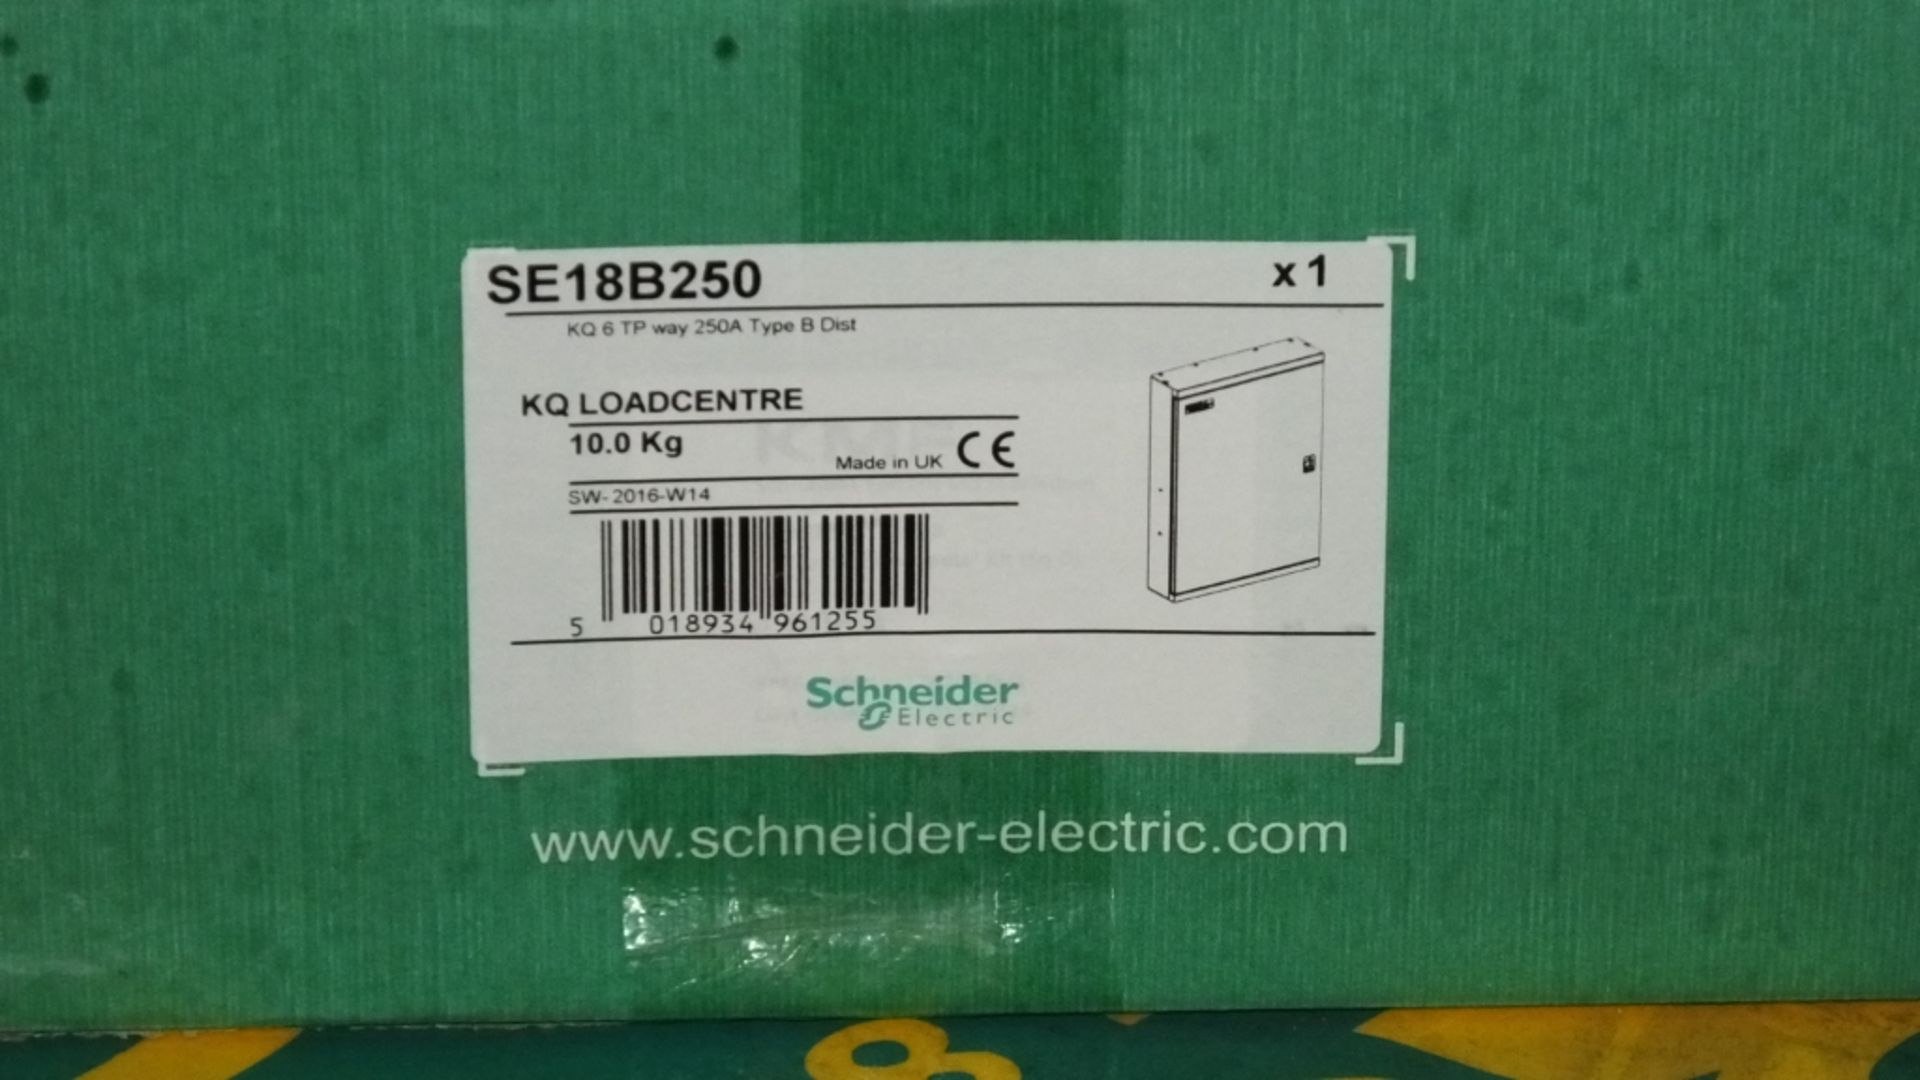 2x Schneider KQ Loadcentre KQ 6TP way 250A Type B Dist - Bild 2 aus 3